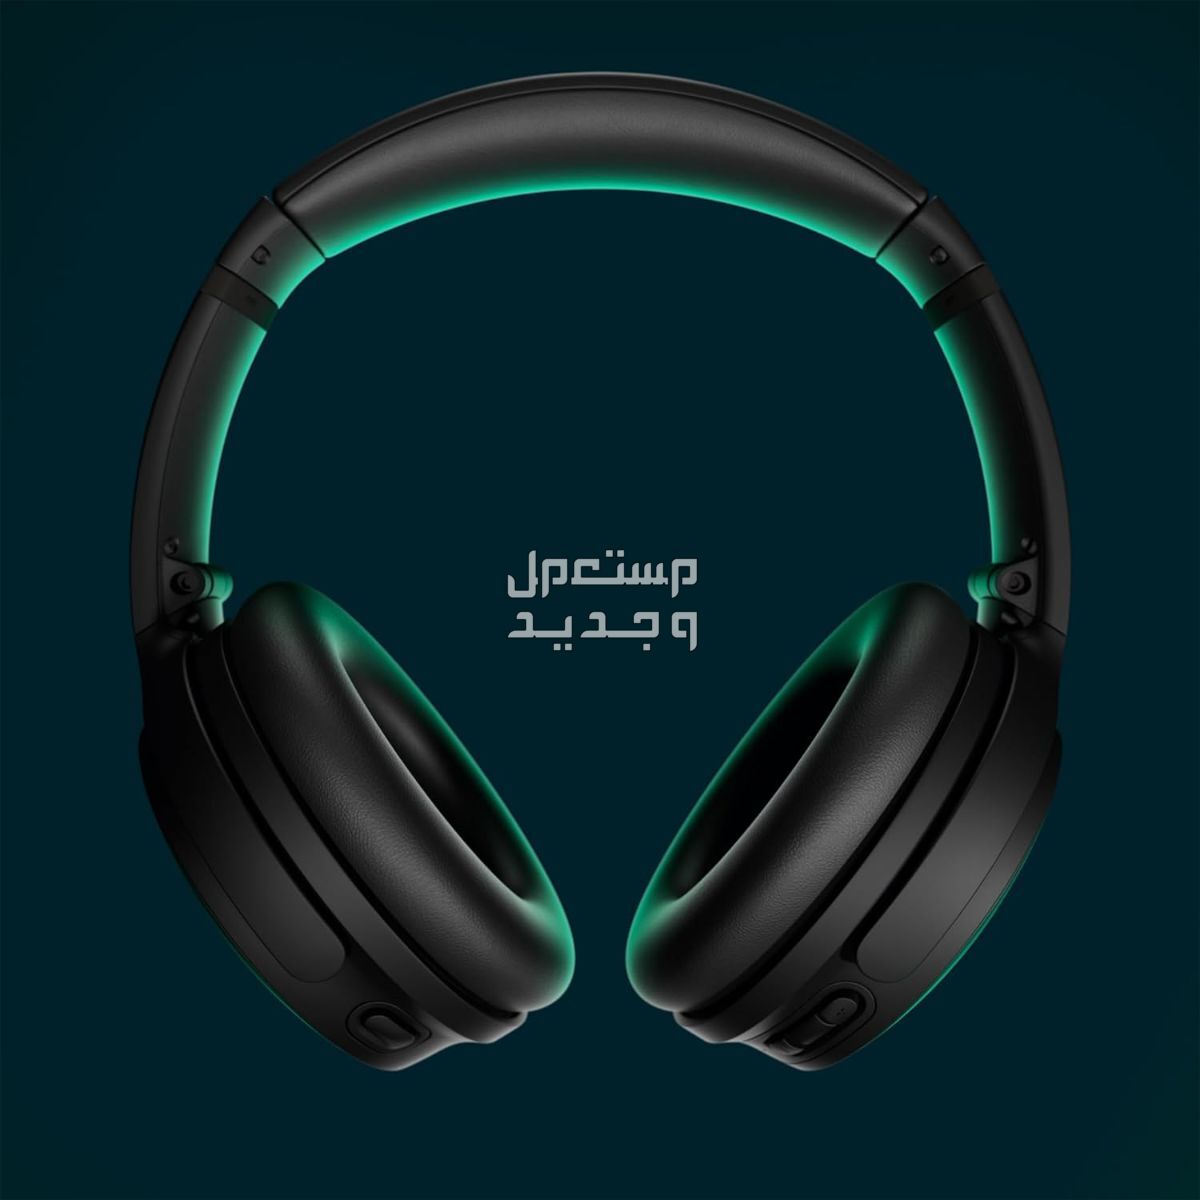 سعر ومواصفات ومميزات سماعات bose الأولى في إلغاء الضوضاء بالعالم في مصر سماعات Bose كوايت كومفورت اللاسلكية المانعة للضوضاء